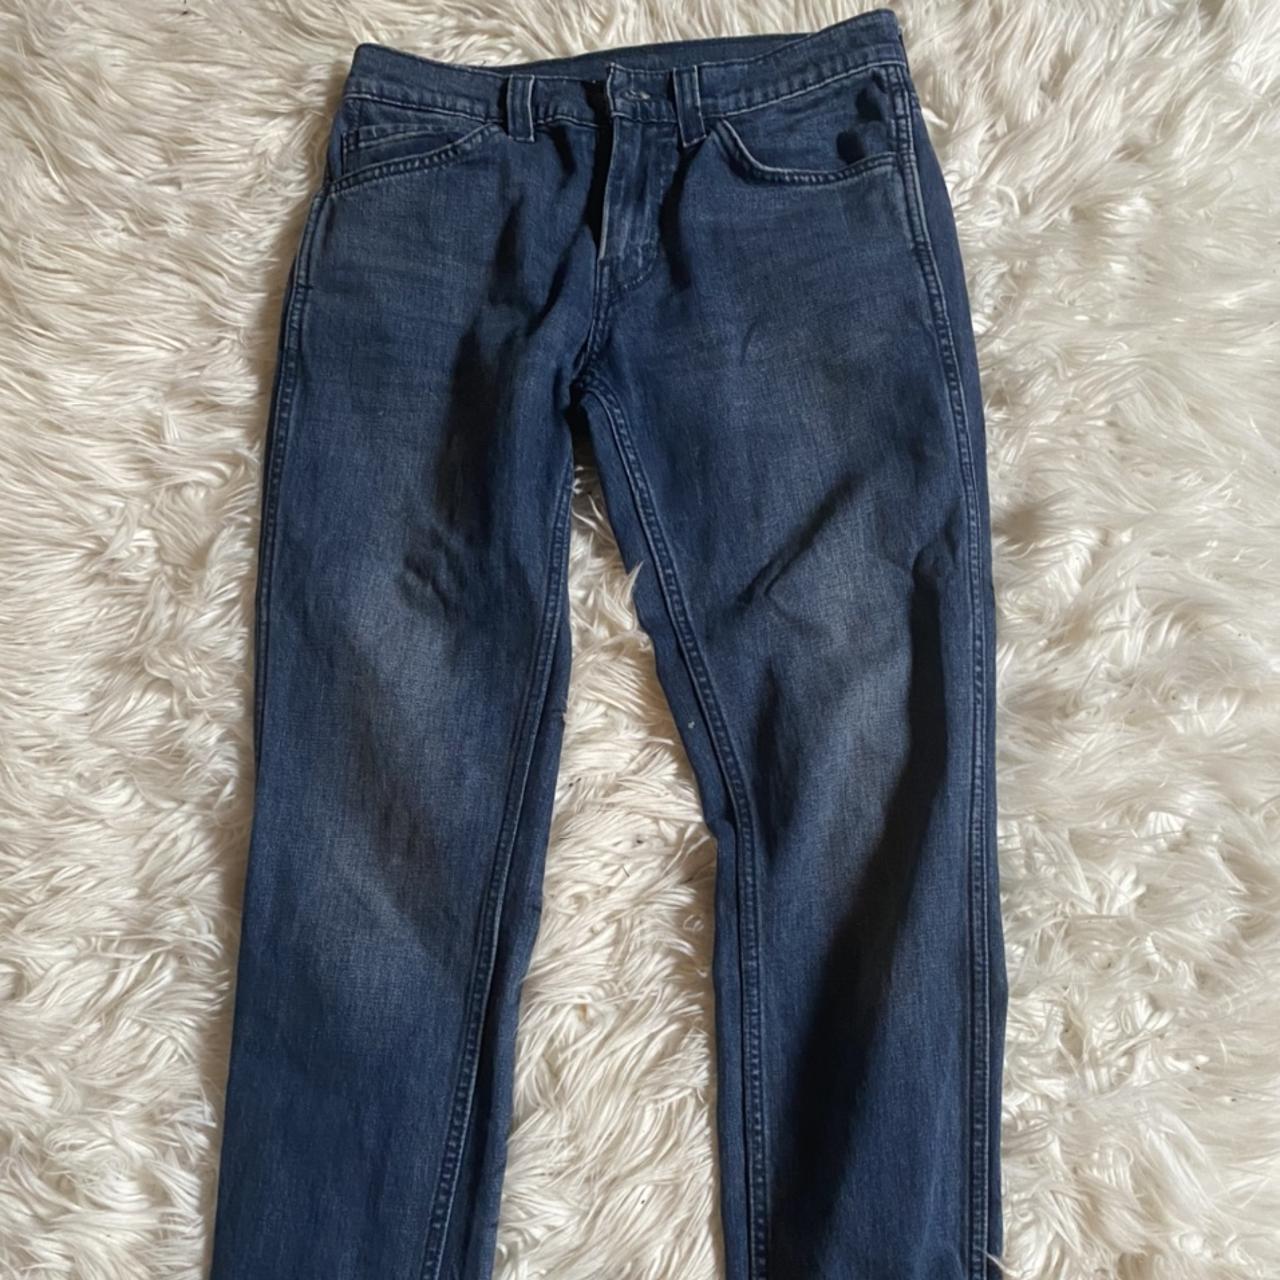 Levi’s 511 w28 l32 dark denim jeans - Depop